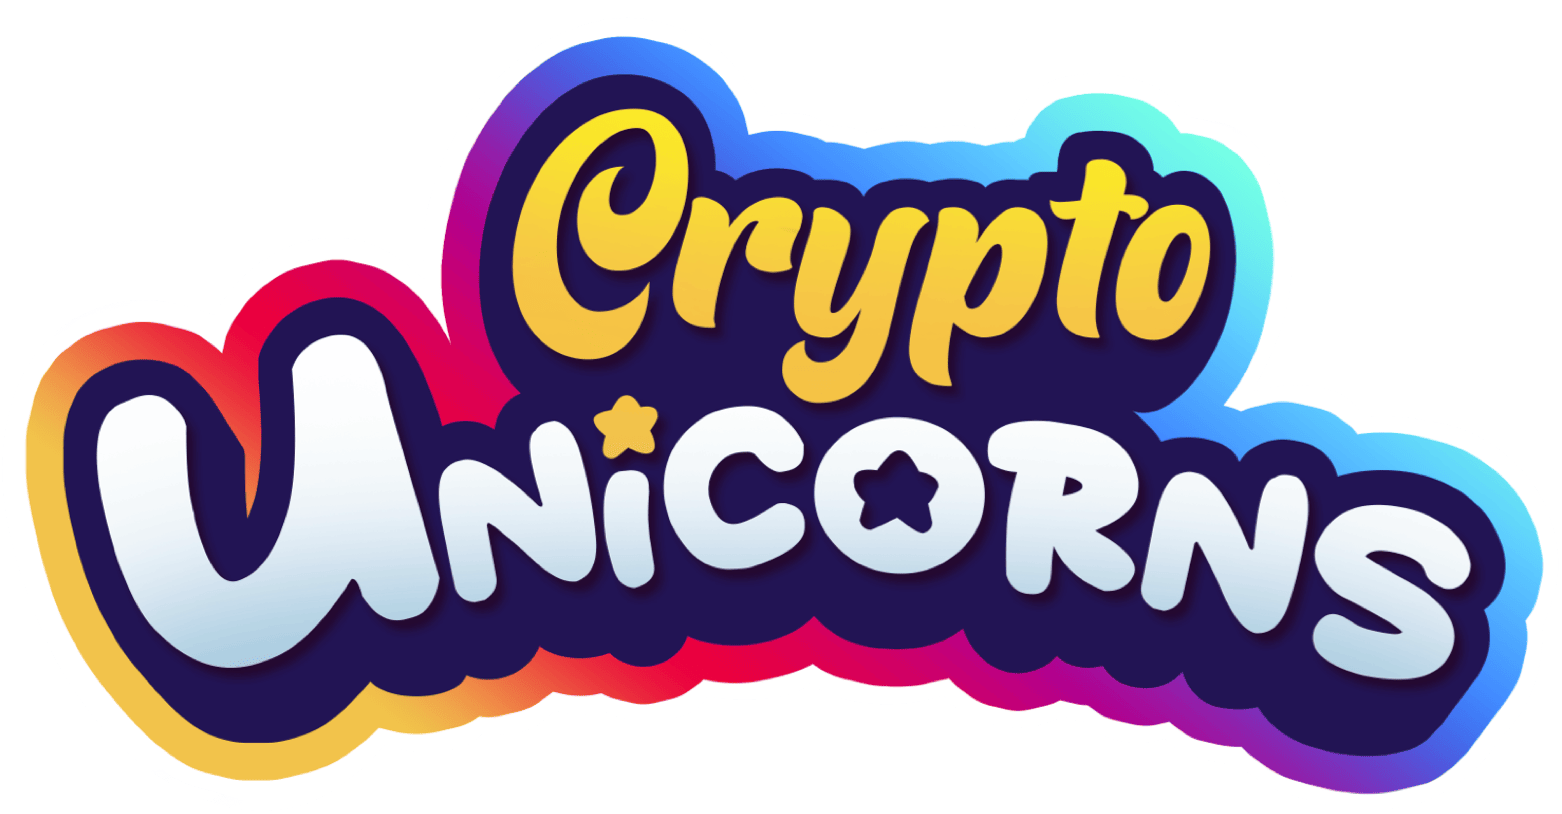 crypto unicorns logo.png